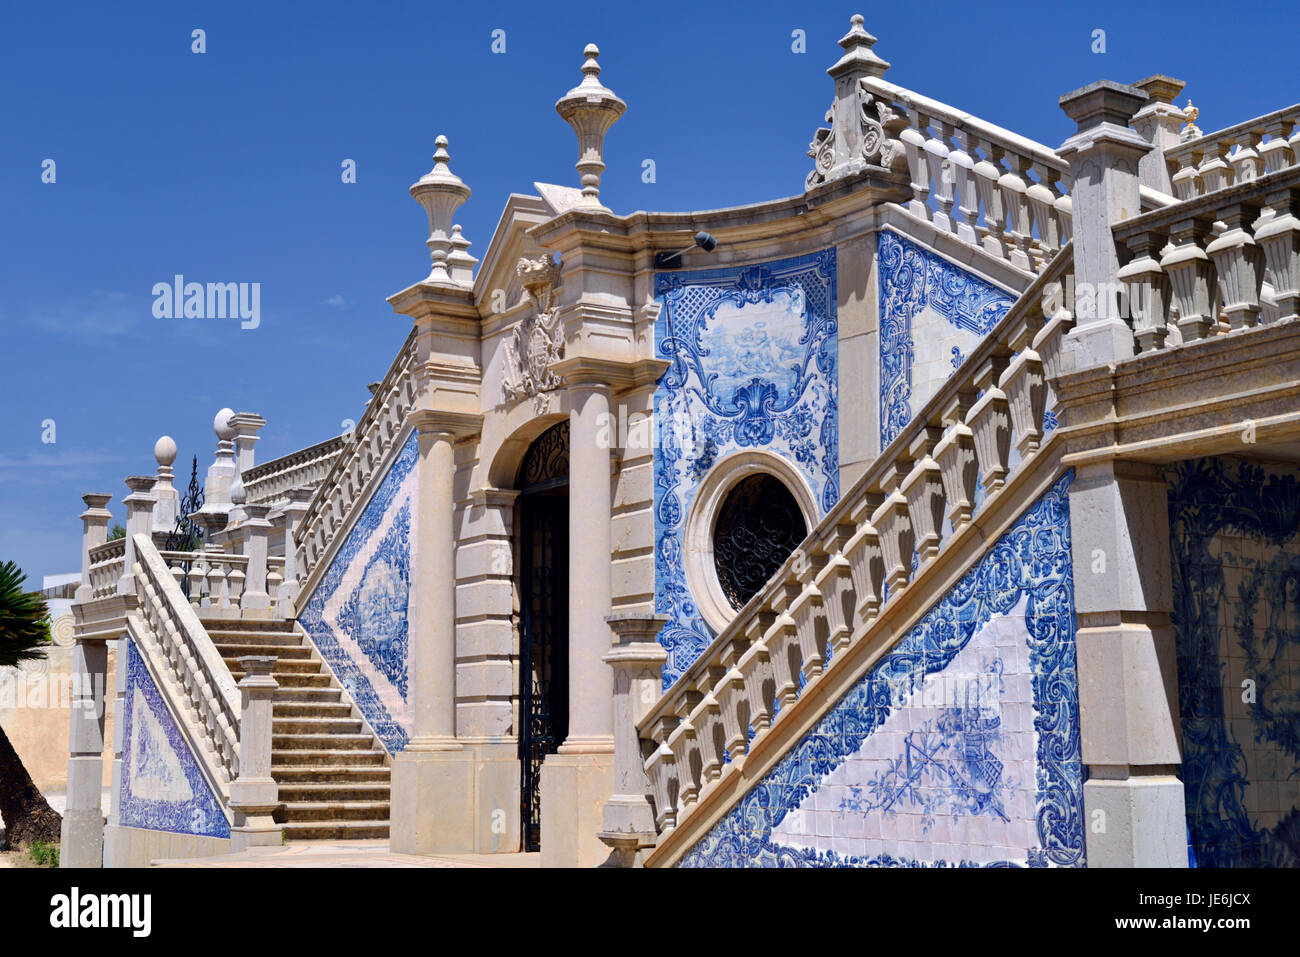 Portogallo: piastrelle blu e bianche come decorazione sulla scalinata barocca a Estoi Palace Foto Stock